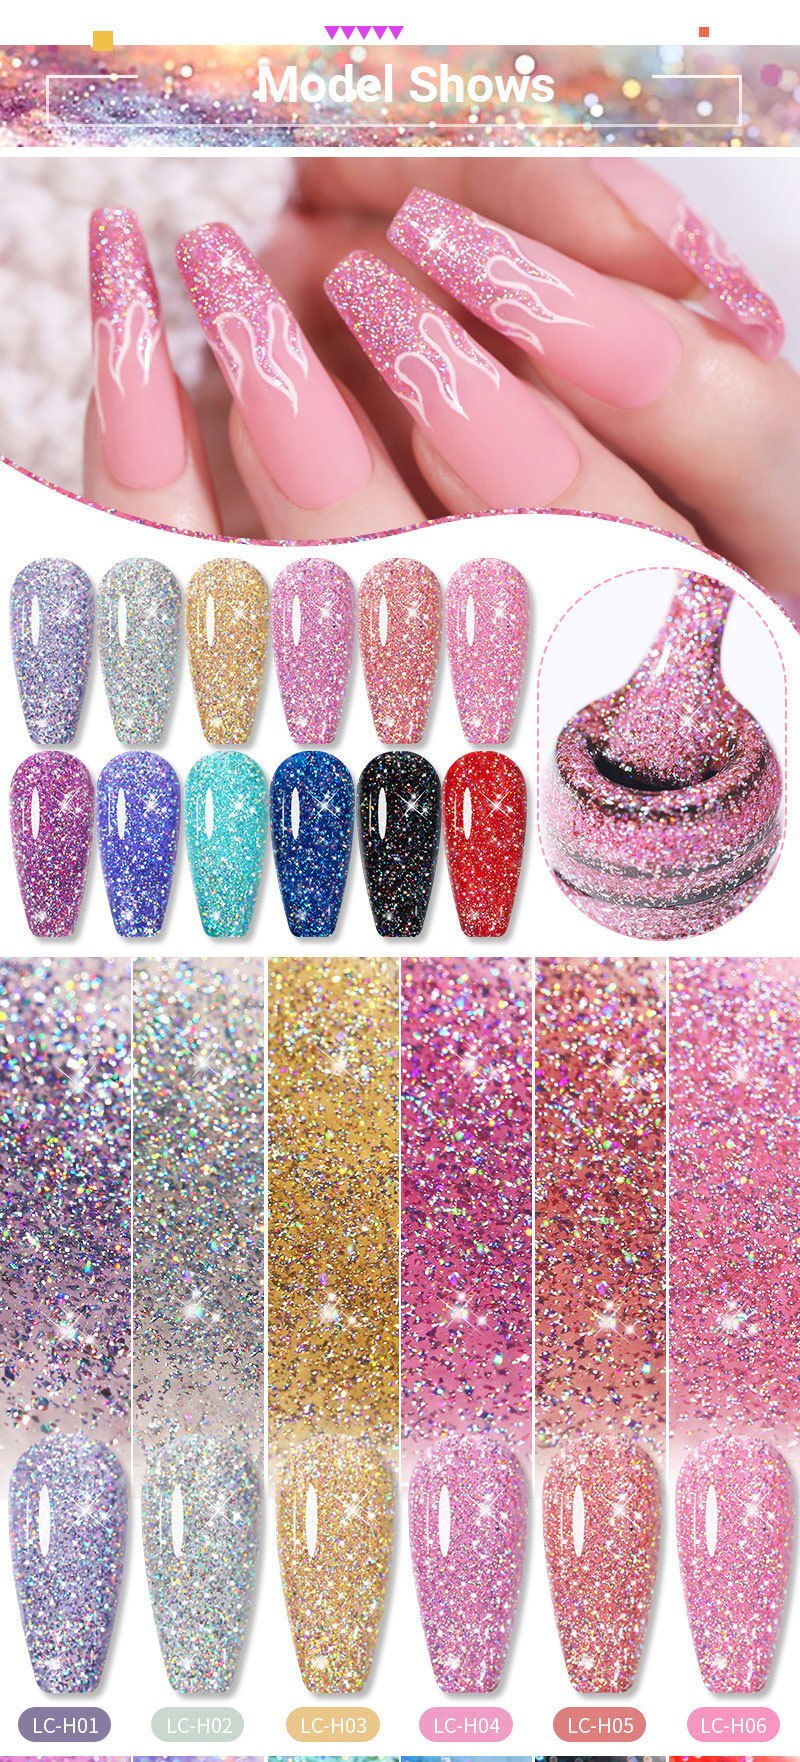 Sugar Rush | Icy Berry Pink Mixed Chunky Glitter | Ultra Shine UV Gels  Polish Home Nail DIY False Tips Nail Art Supply LUMIQO